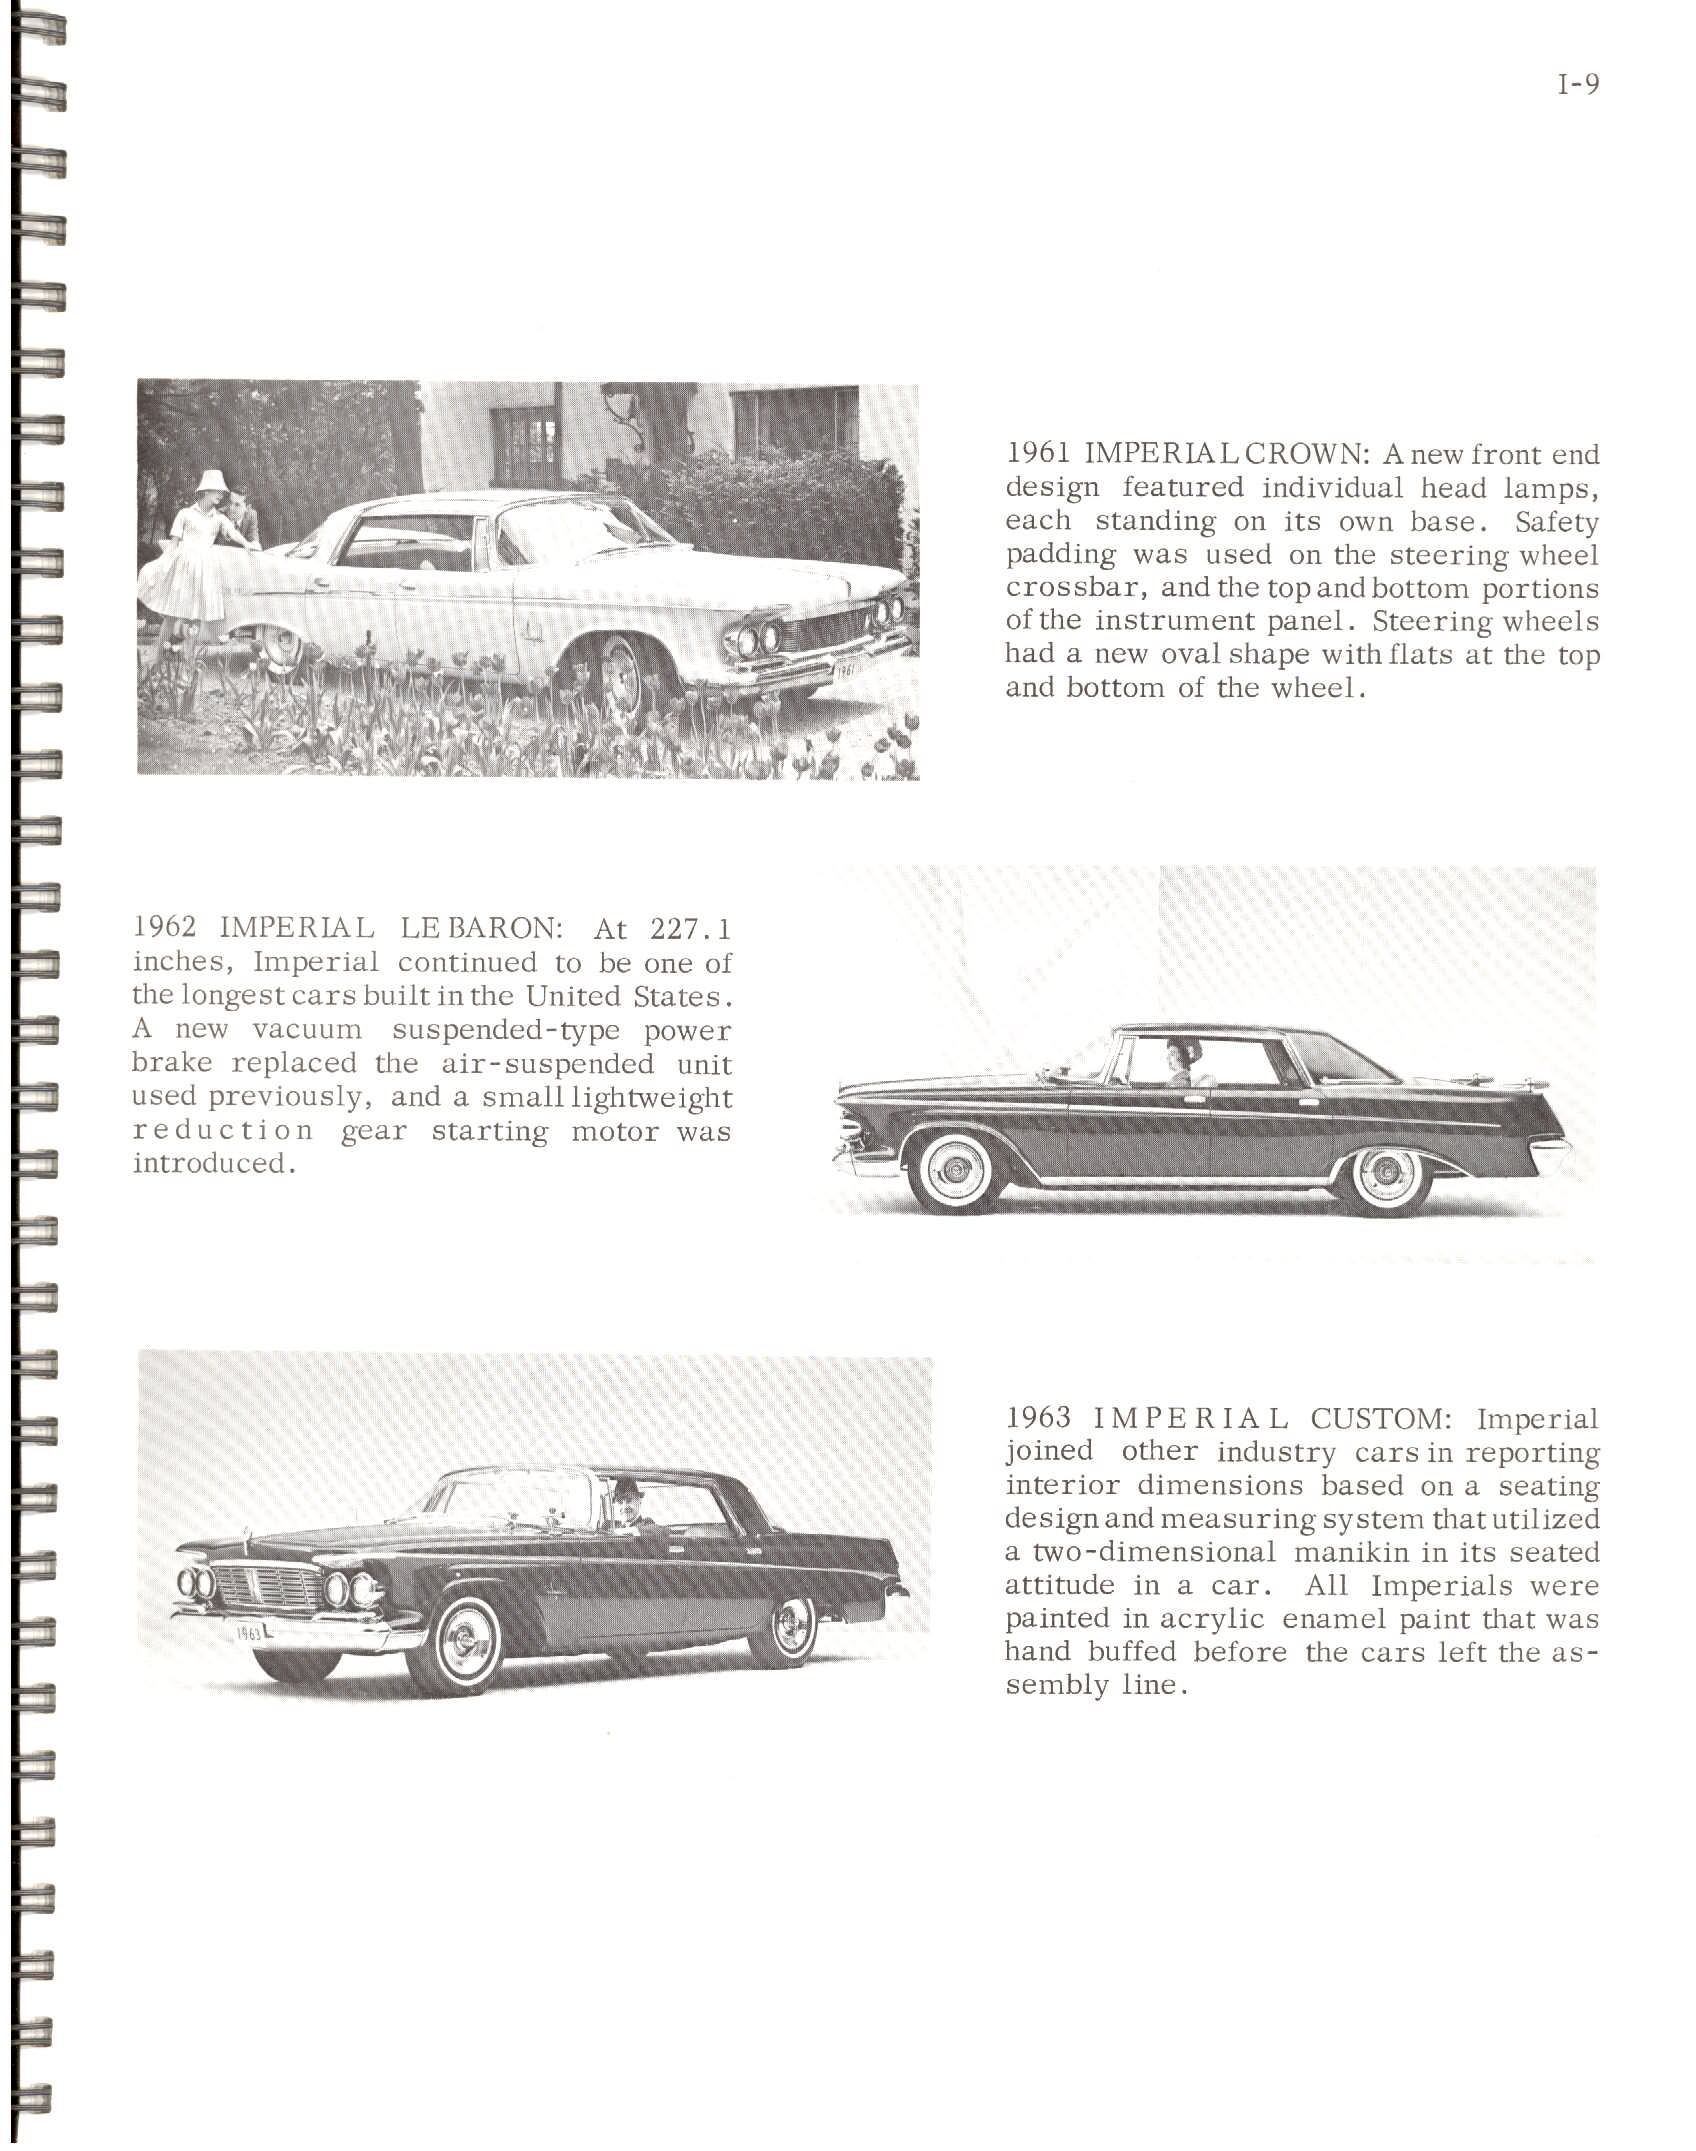 1966-History_Of_Chrysler_Cars-I09